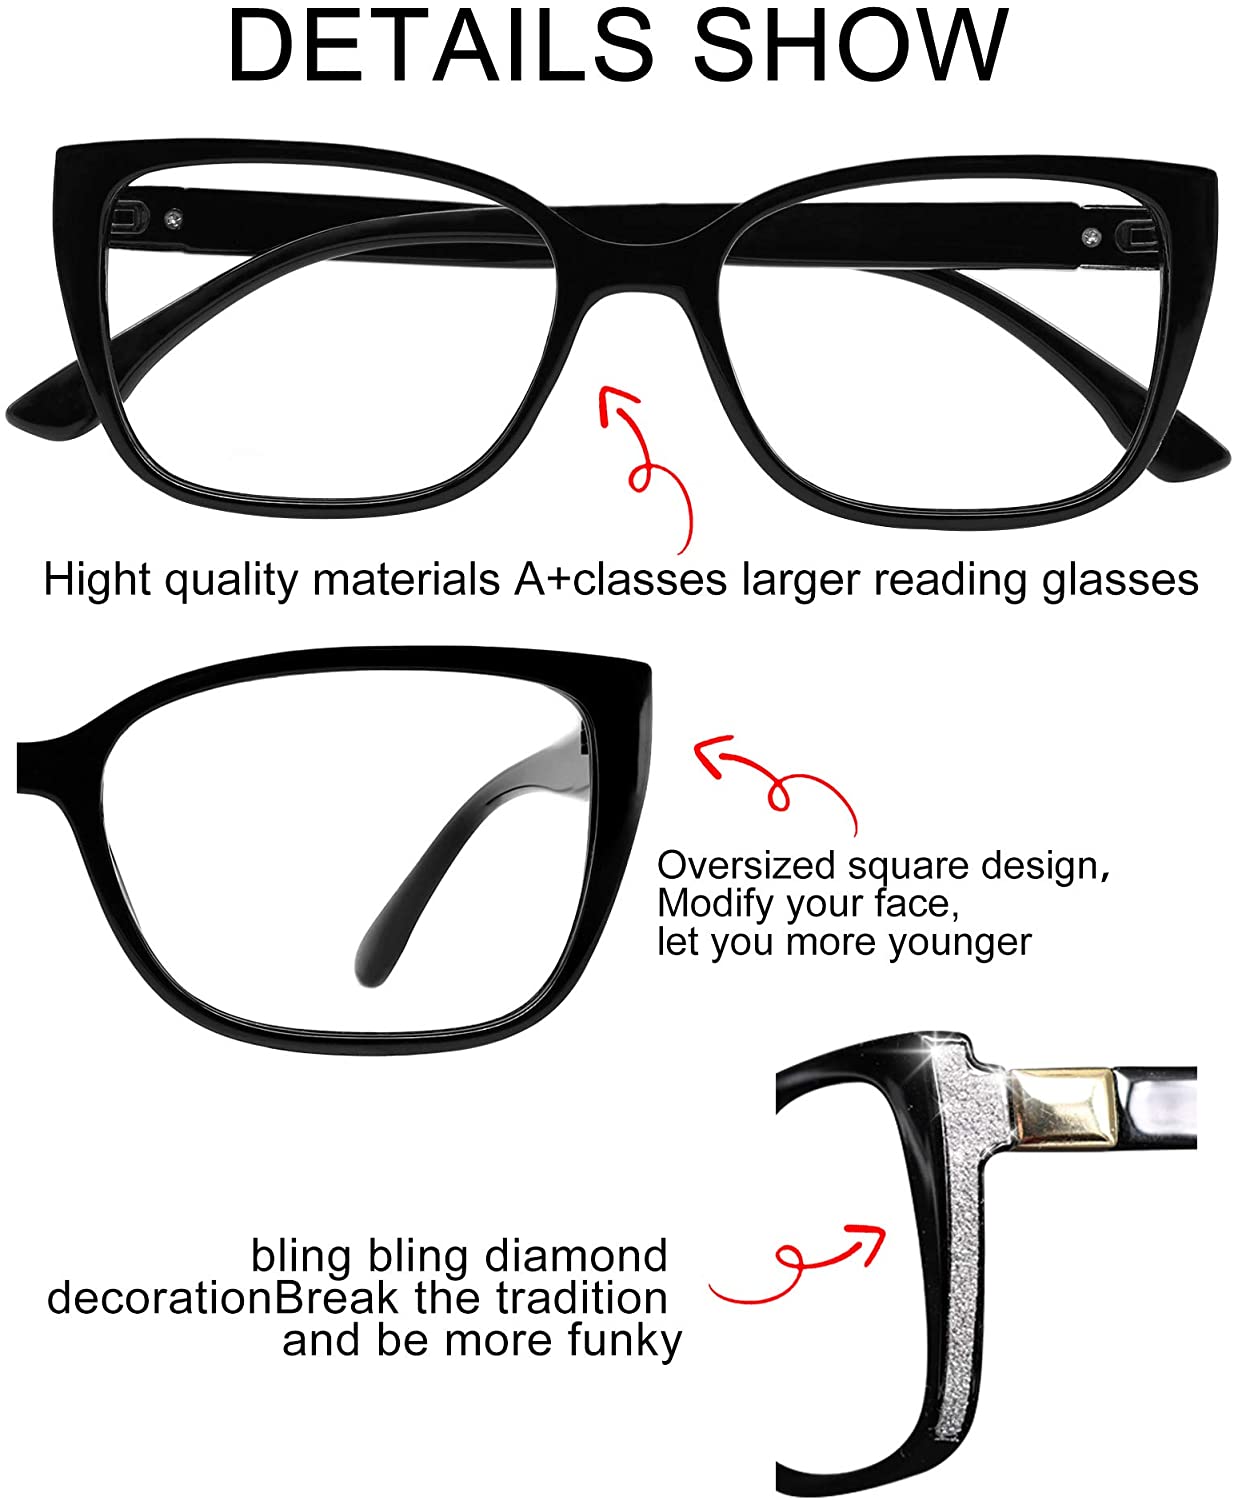 OCCI CHIARI Reading Glasses For Women Oversized Reader 1.0 - 2.75